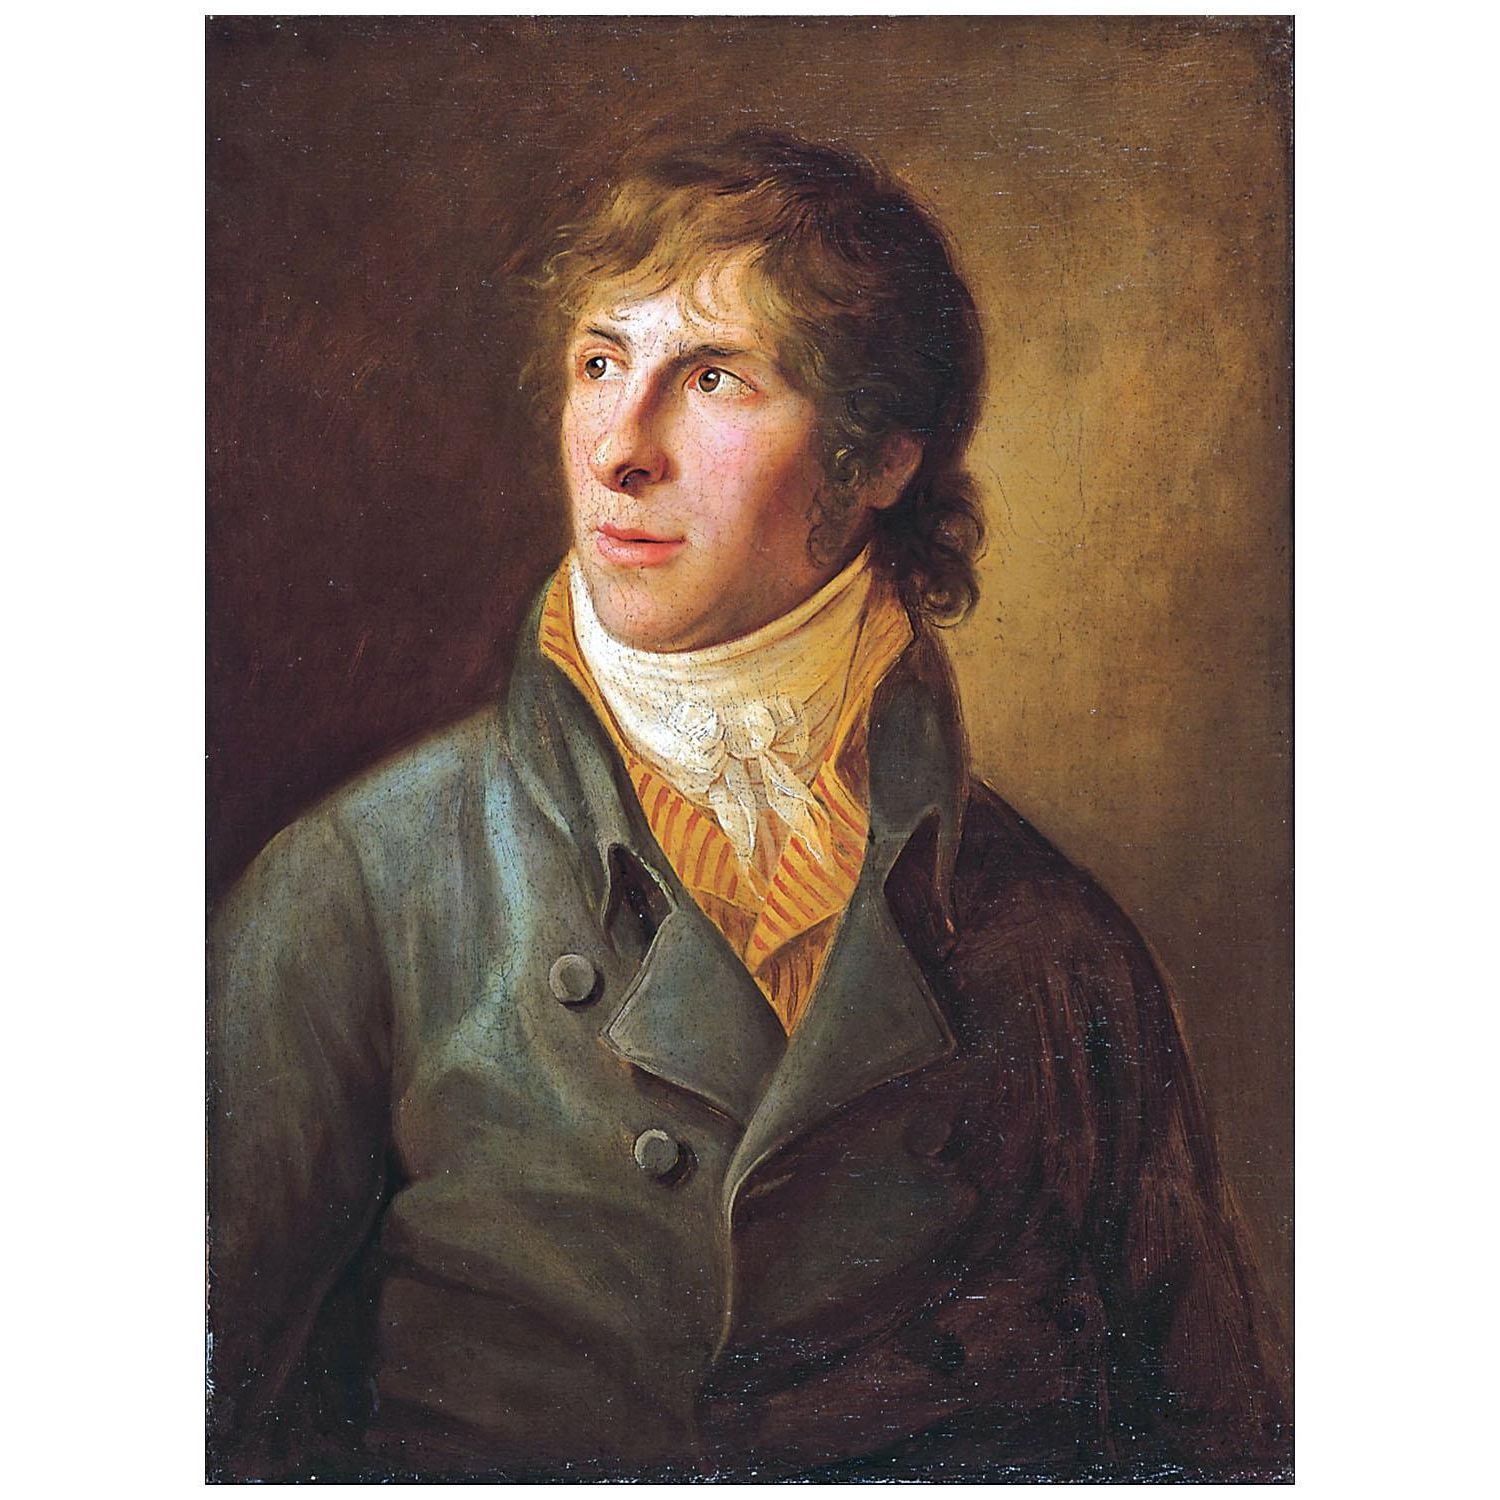 Gerhard von Kügelgen. Christian Friedrich. 1810. PSM Griefwald